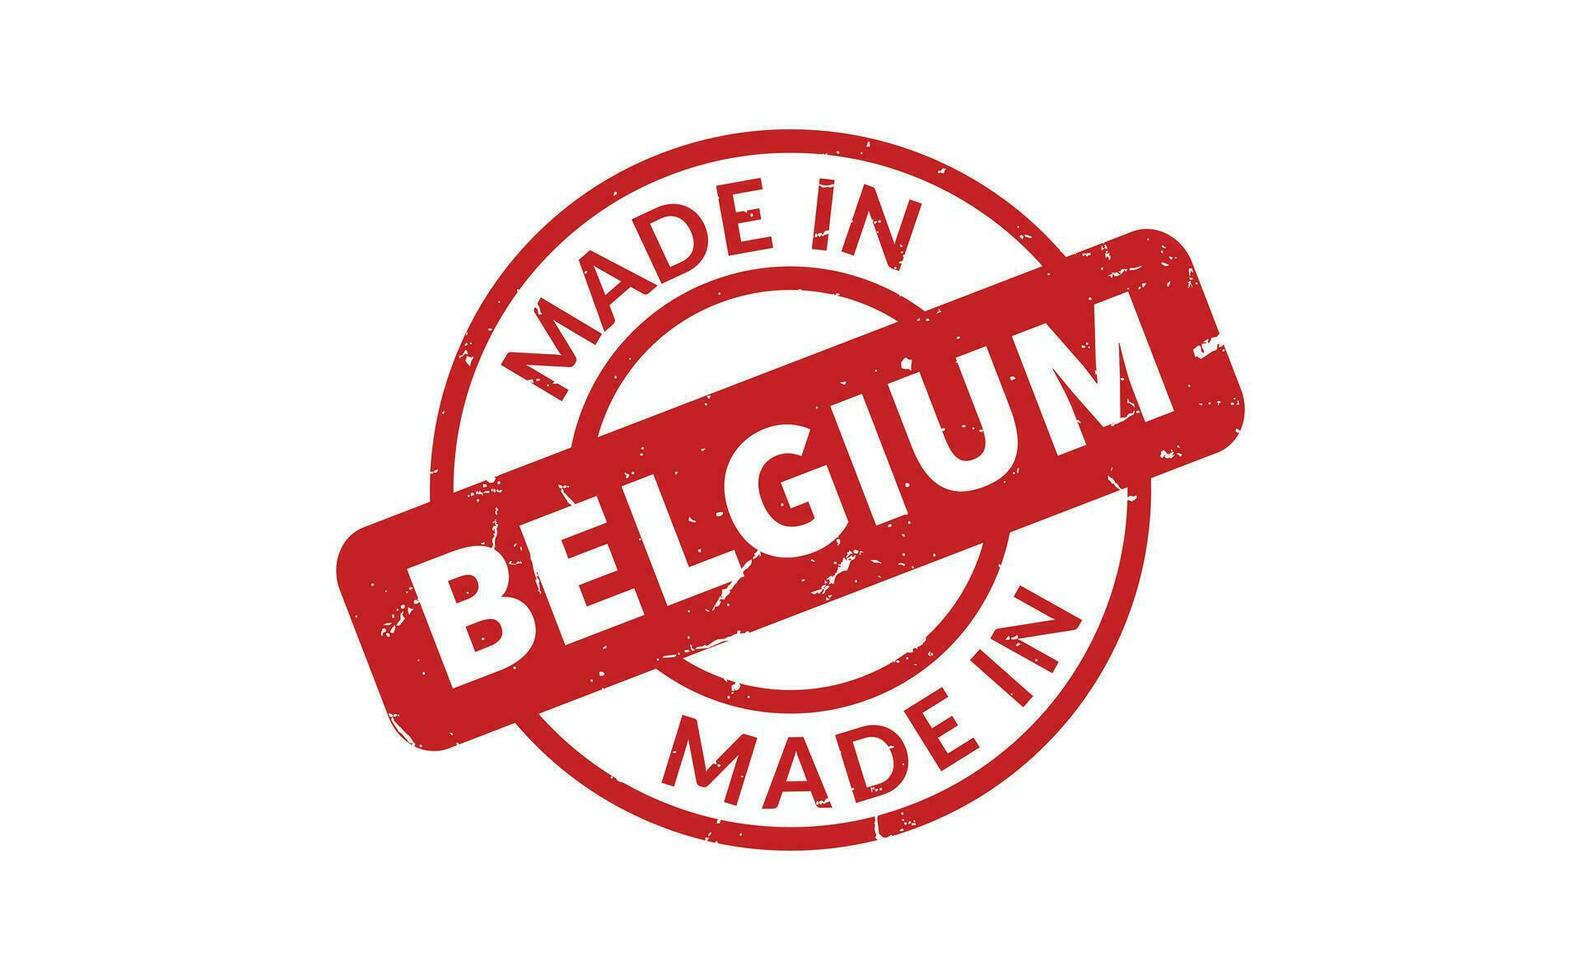 gemacht im Belgien Gummi Briefmarke vektor